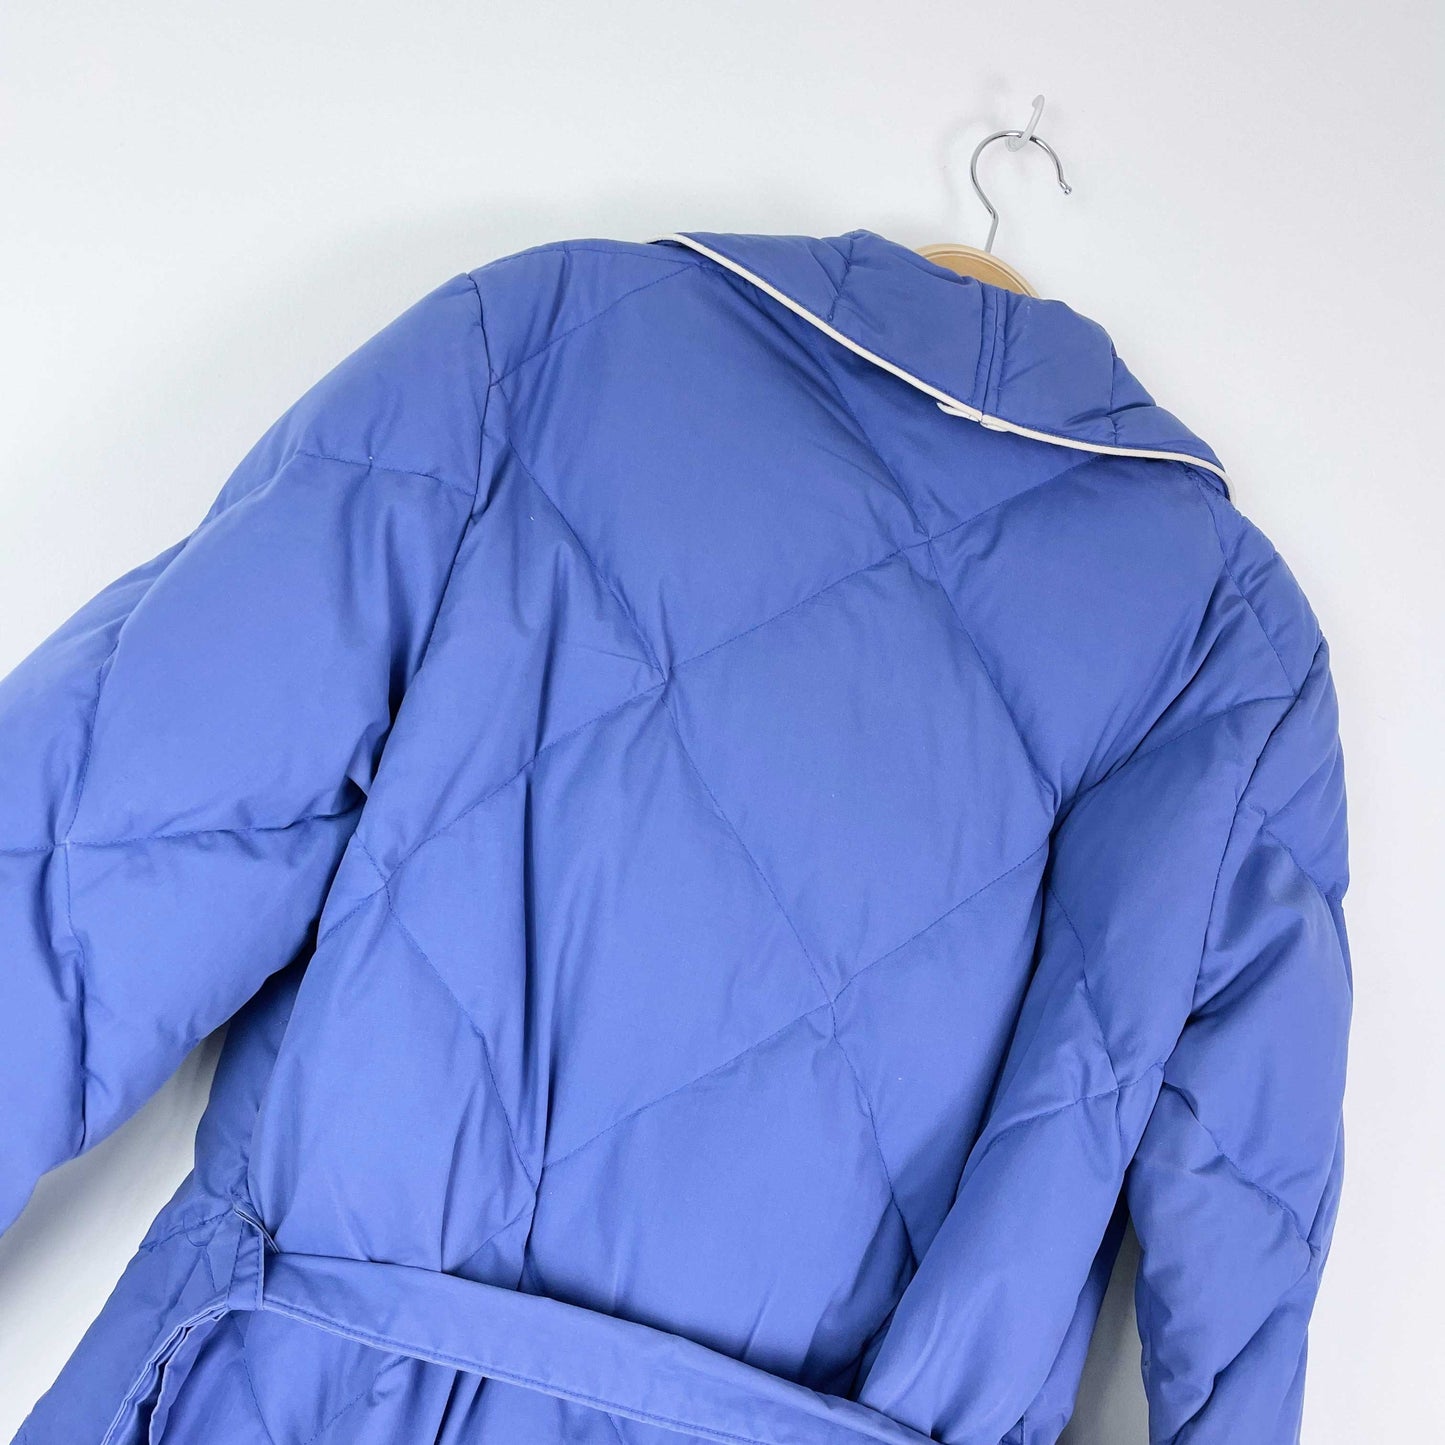 vintage 80s eddie bauer down puffer housecoat jacket - size medium